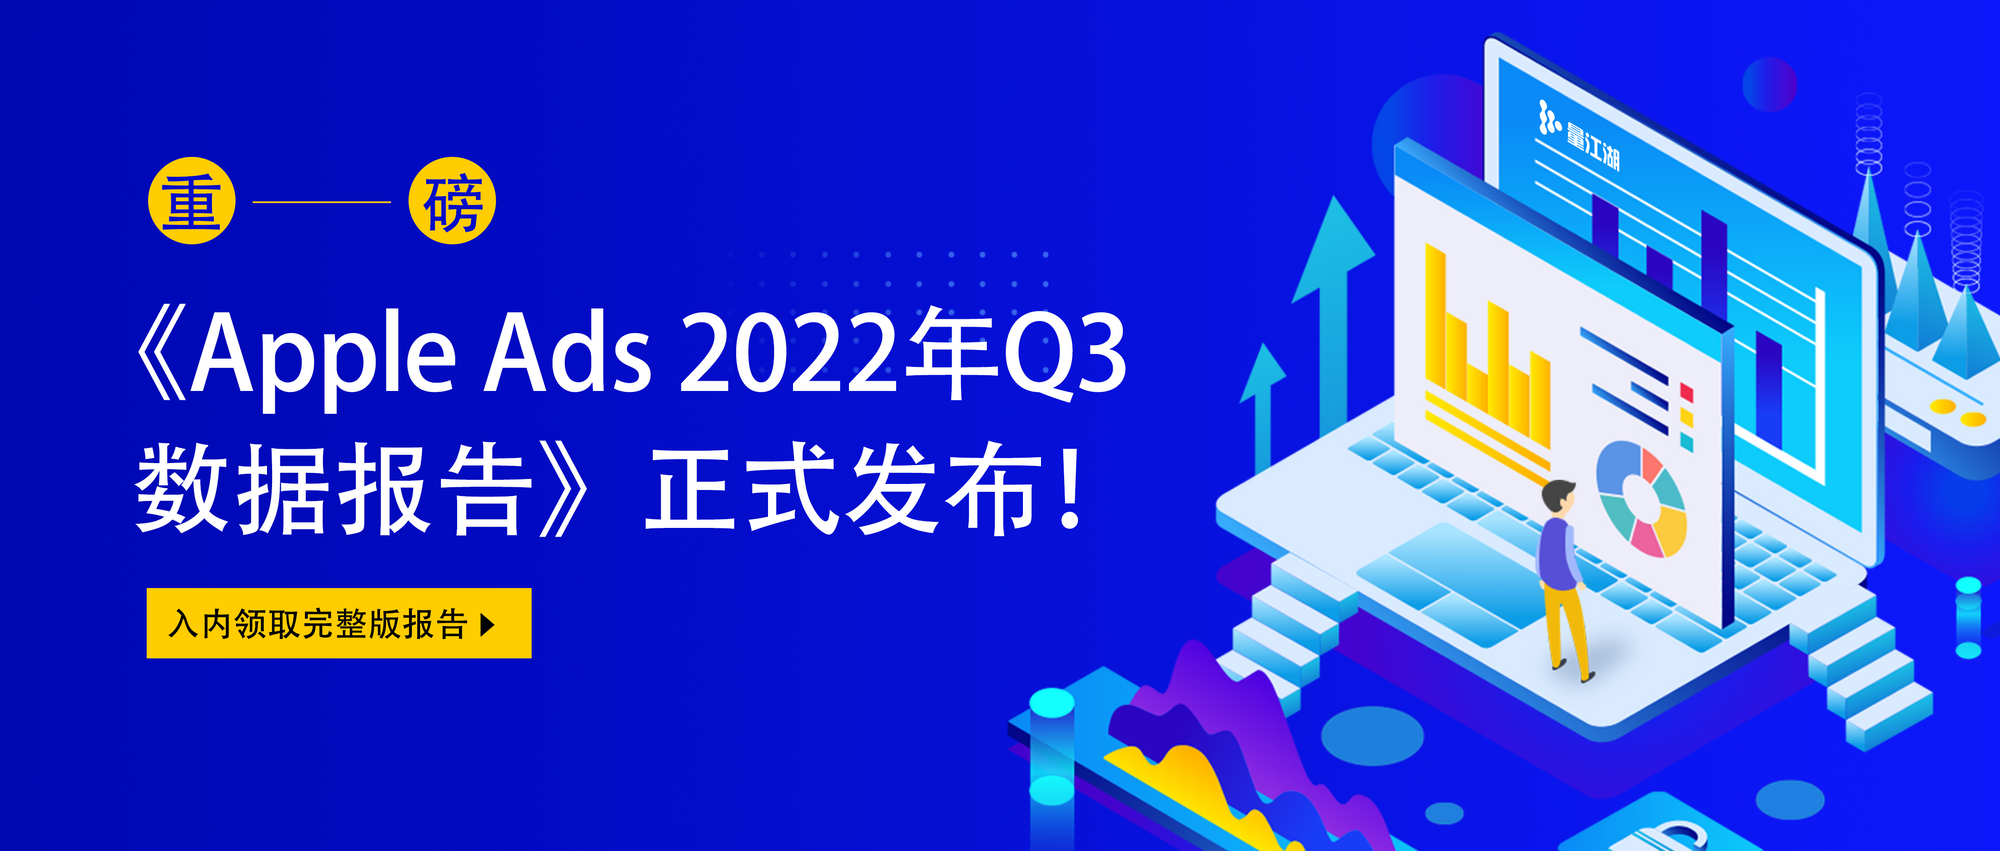 量江湖正式發布《Apple Ads 2022年 Q3 數據報告》